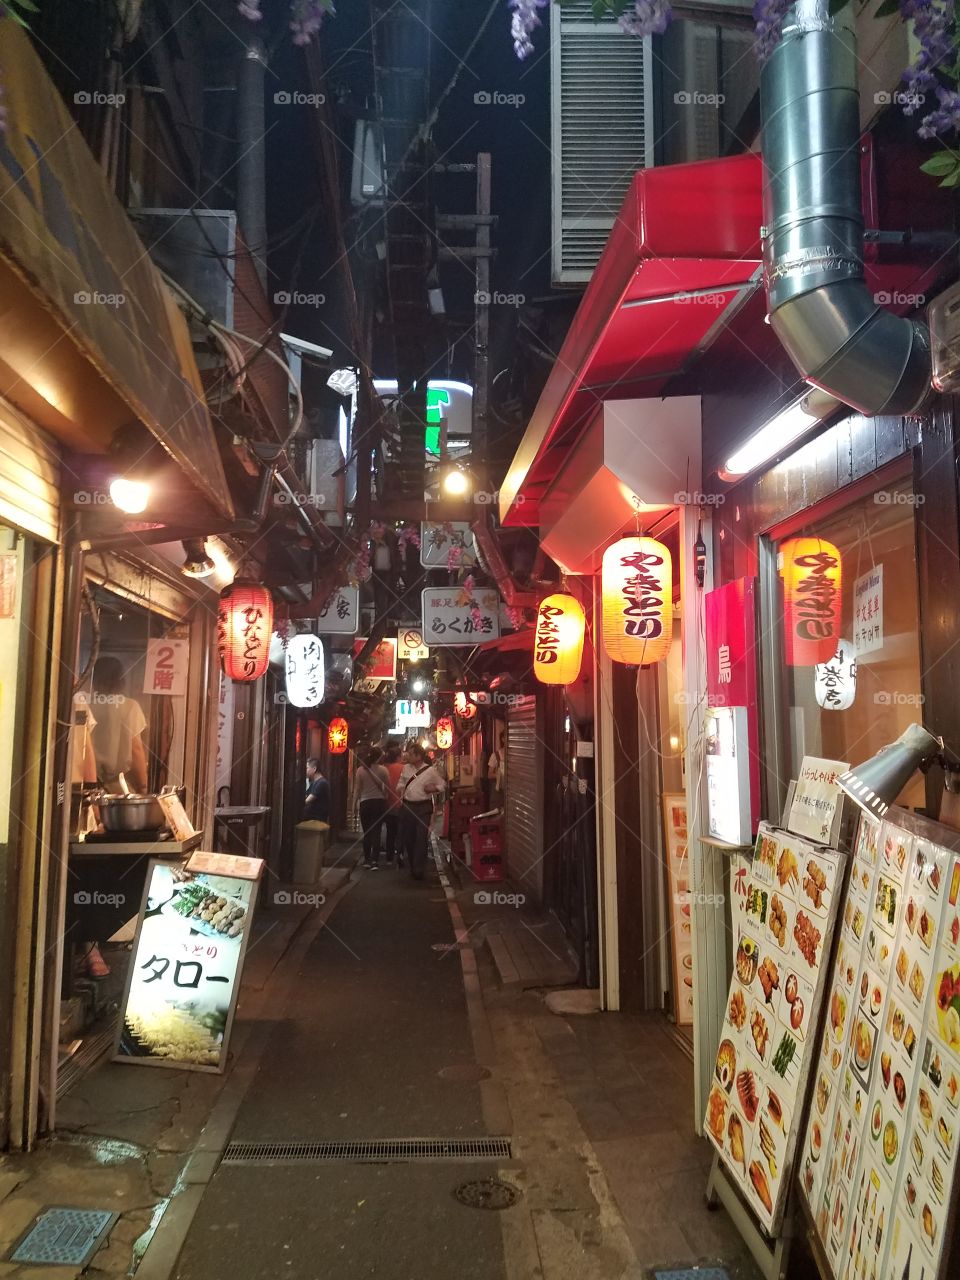 Back alley in Shinjuku